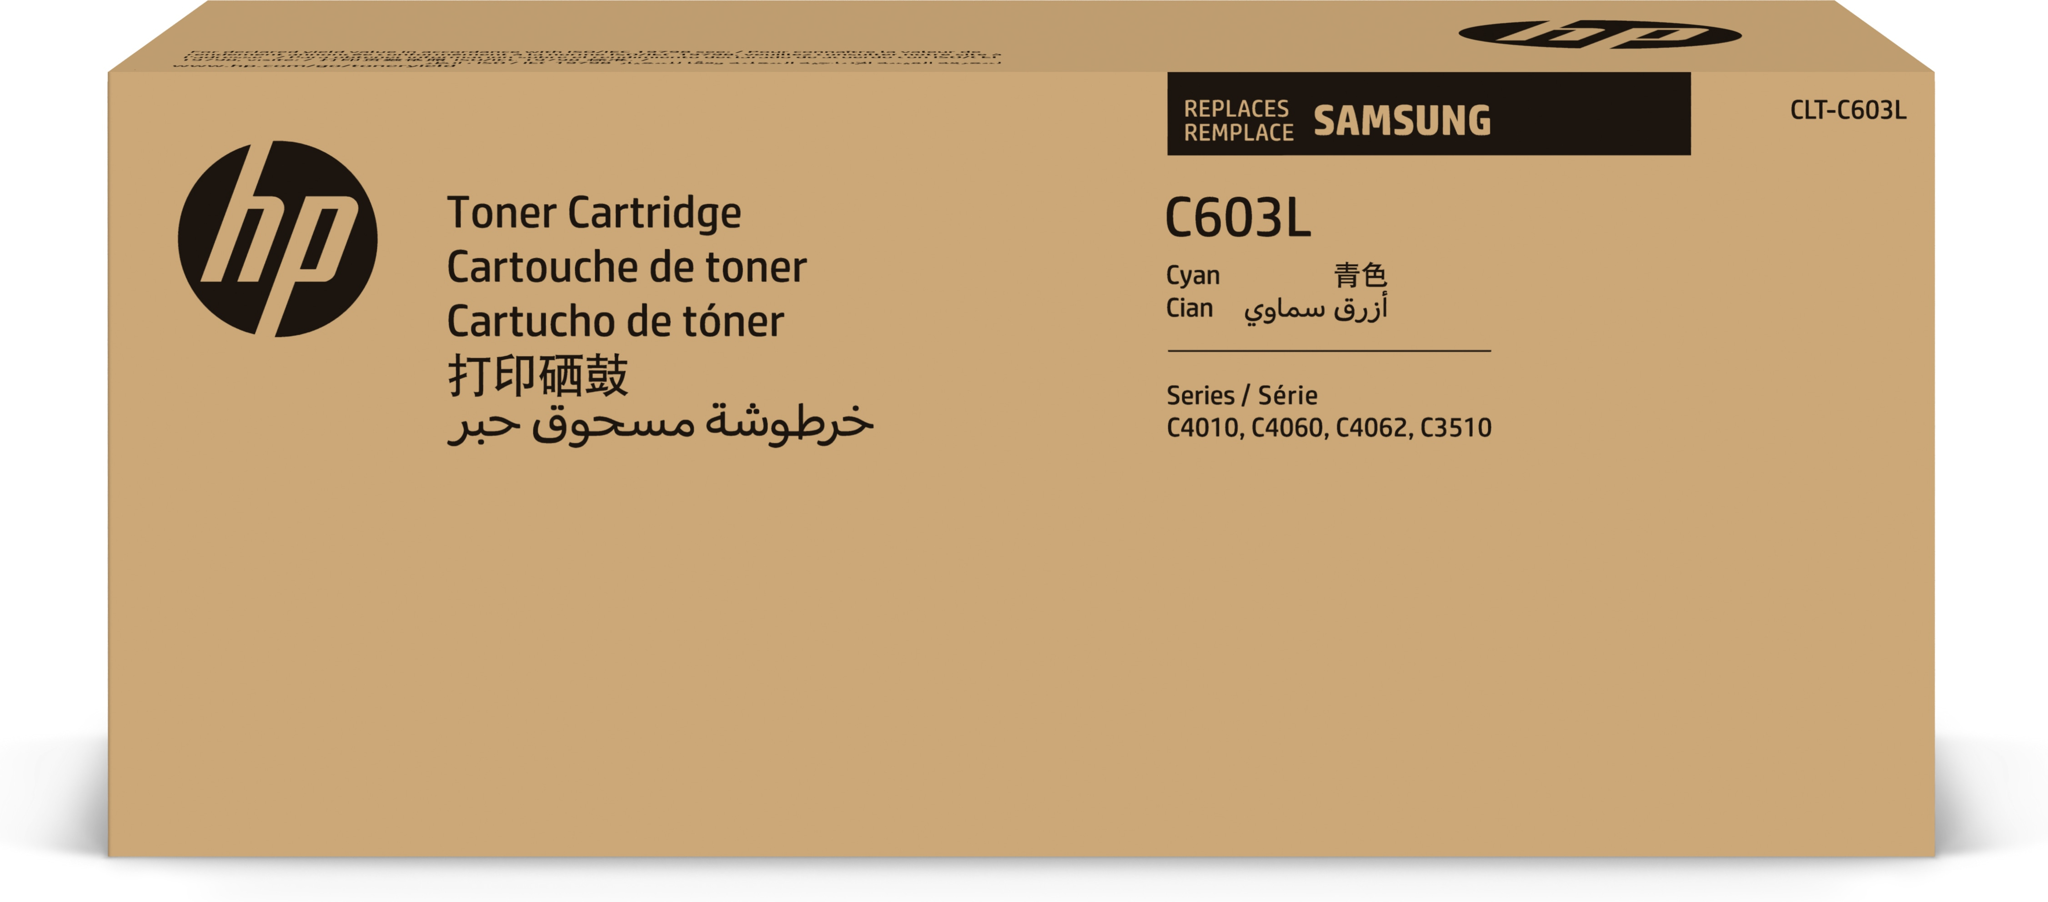 Bild von HP CLT-C603L Tonerkartusche mit hoher Reichweite Cyan - 10000 Seiten - Cyan - 1 Stück(e)